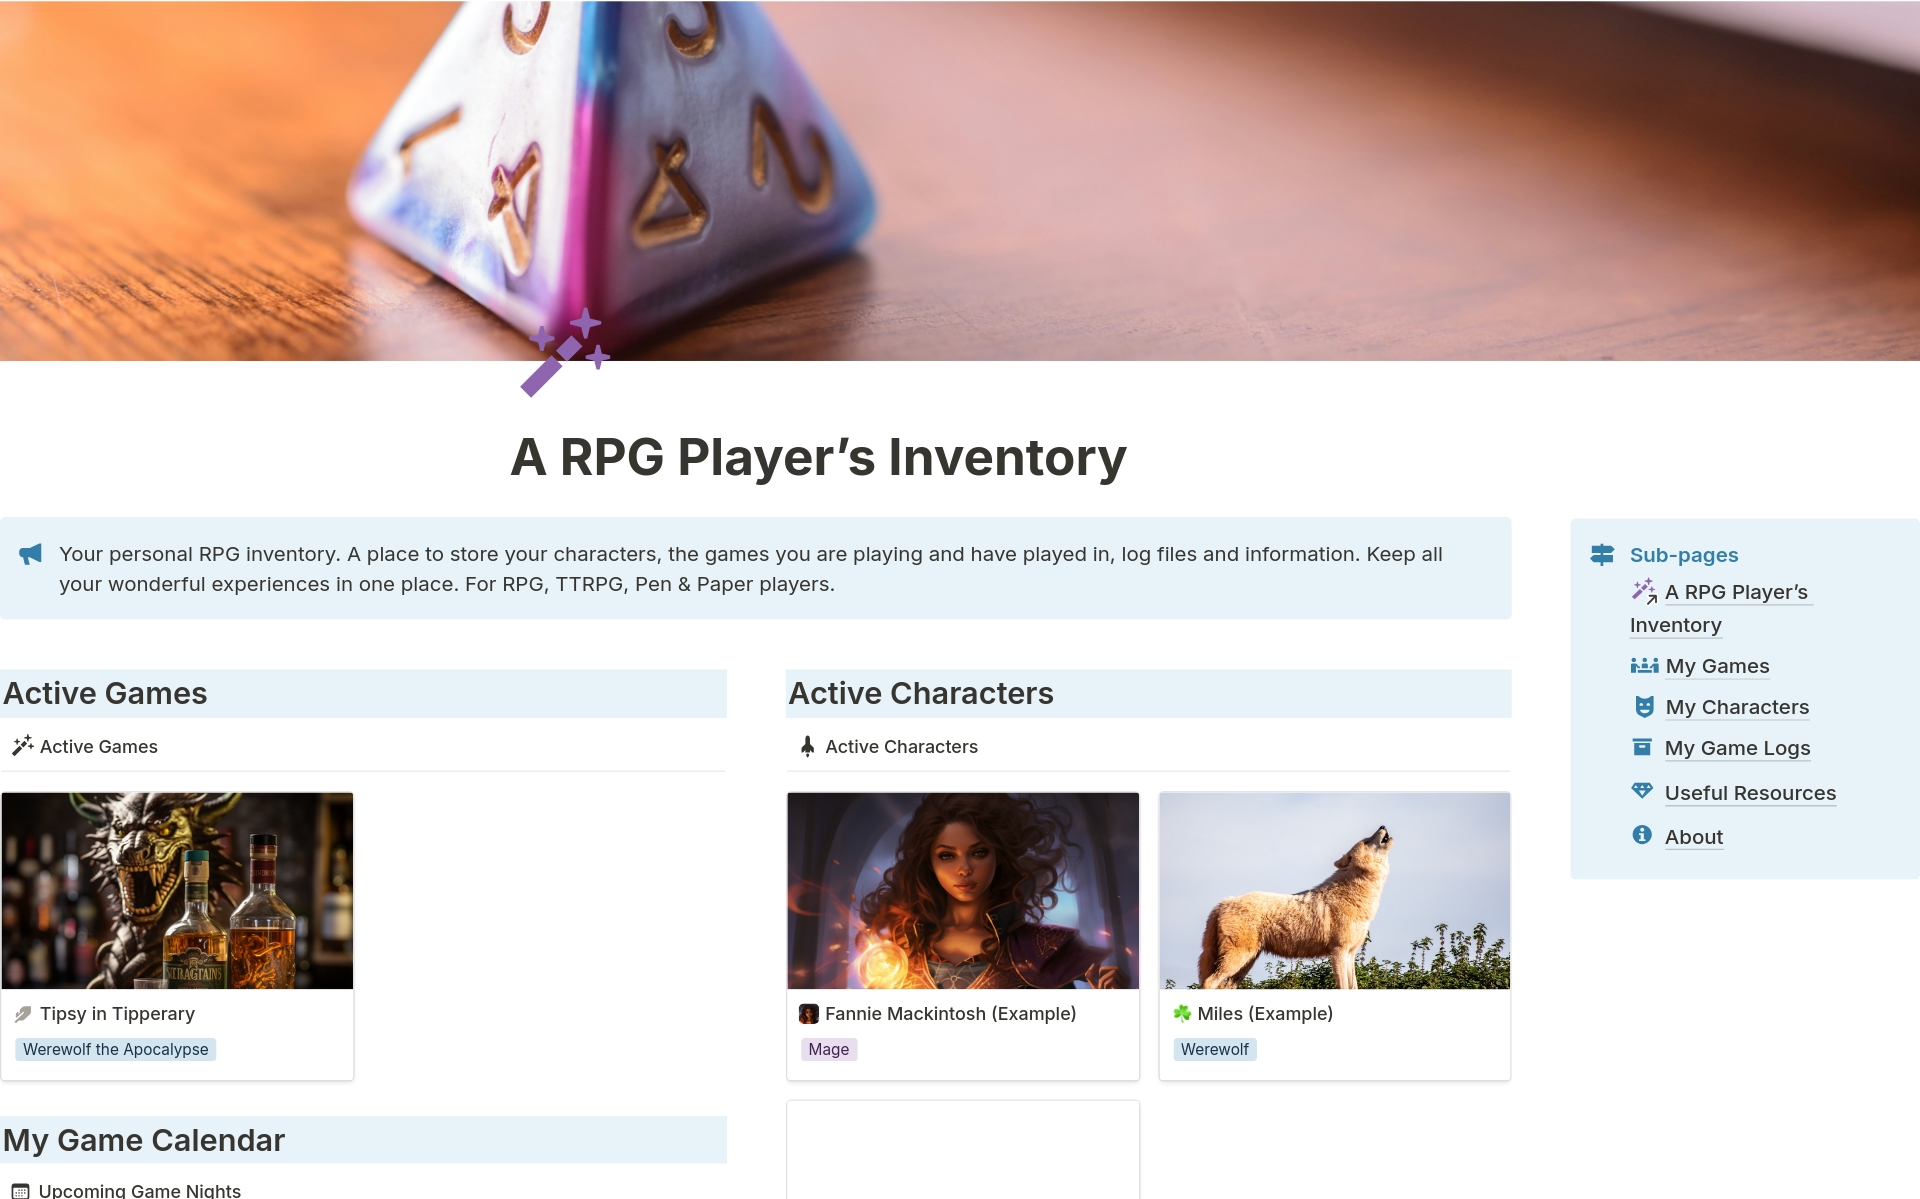 Vista previa de una plantilla para A RPG player’s inventory